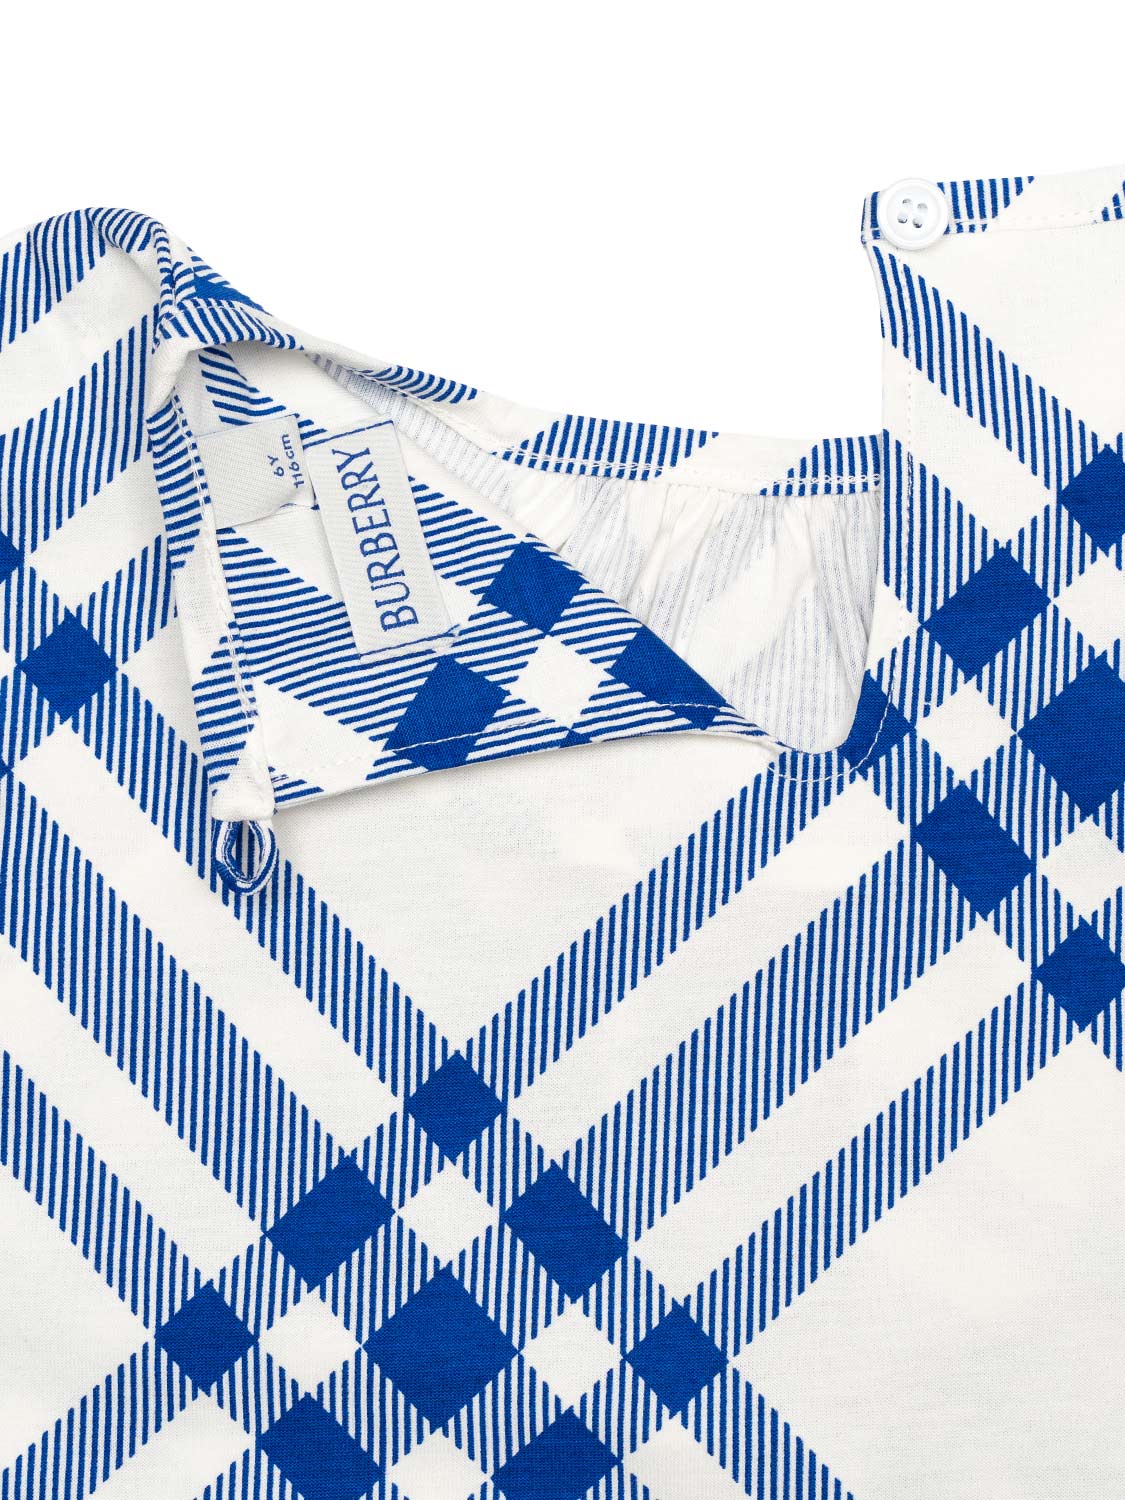 Bluse mit Karo-Muster - Weiß/Blau KG5 Alexas